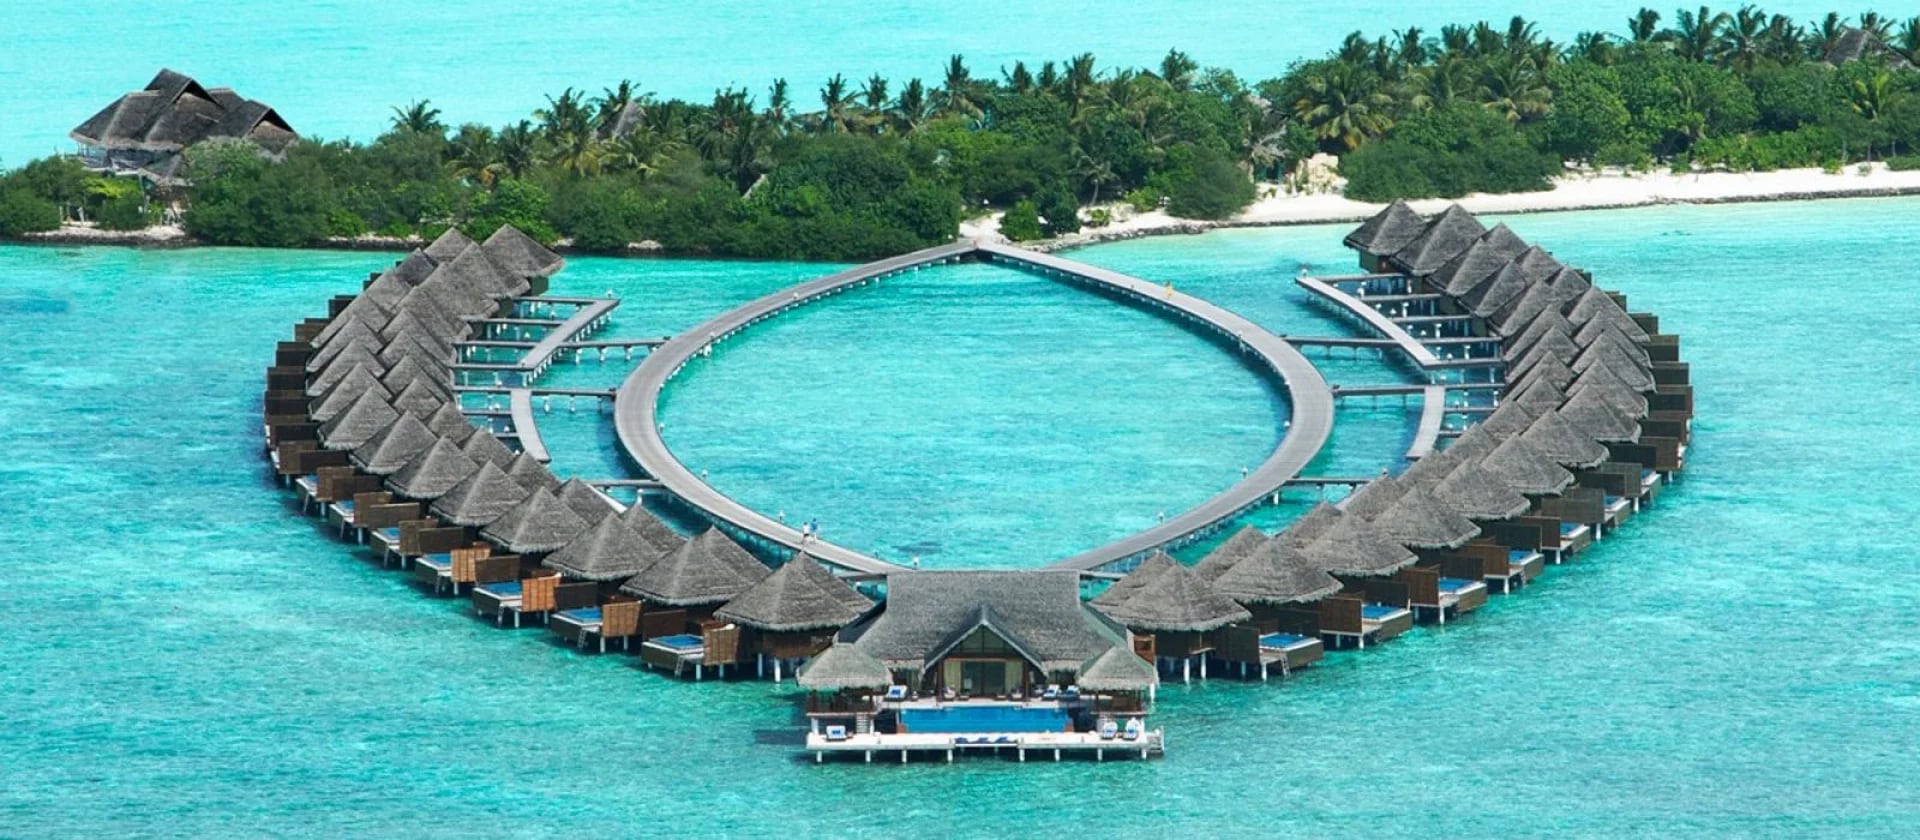 El exclusivo resort cuenta con bungalow para sus huespedes, cada una con piscina y salida directa al mar